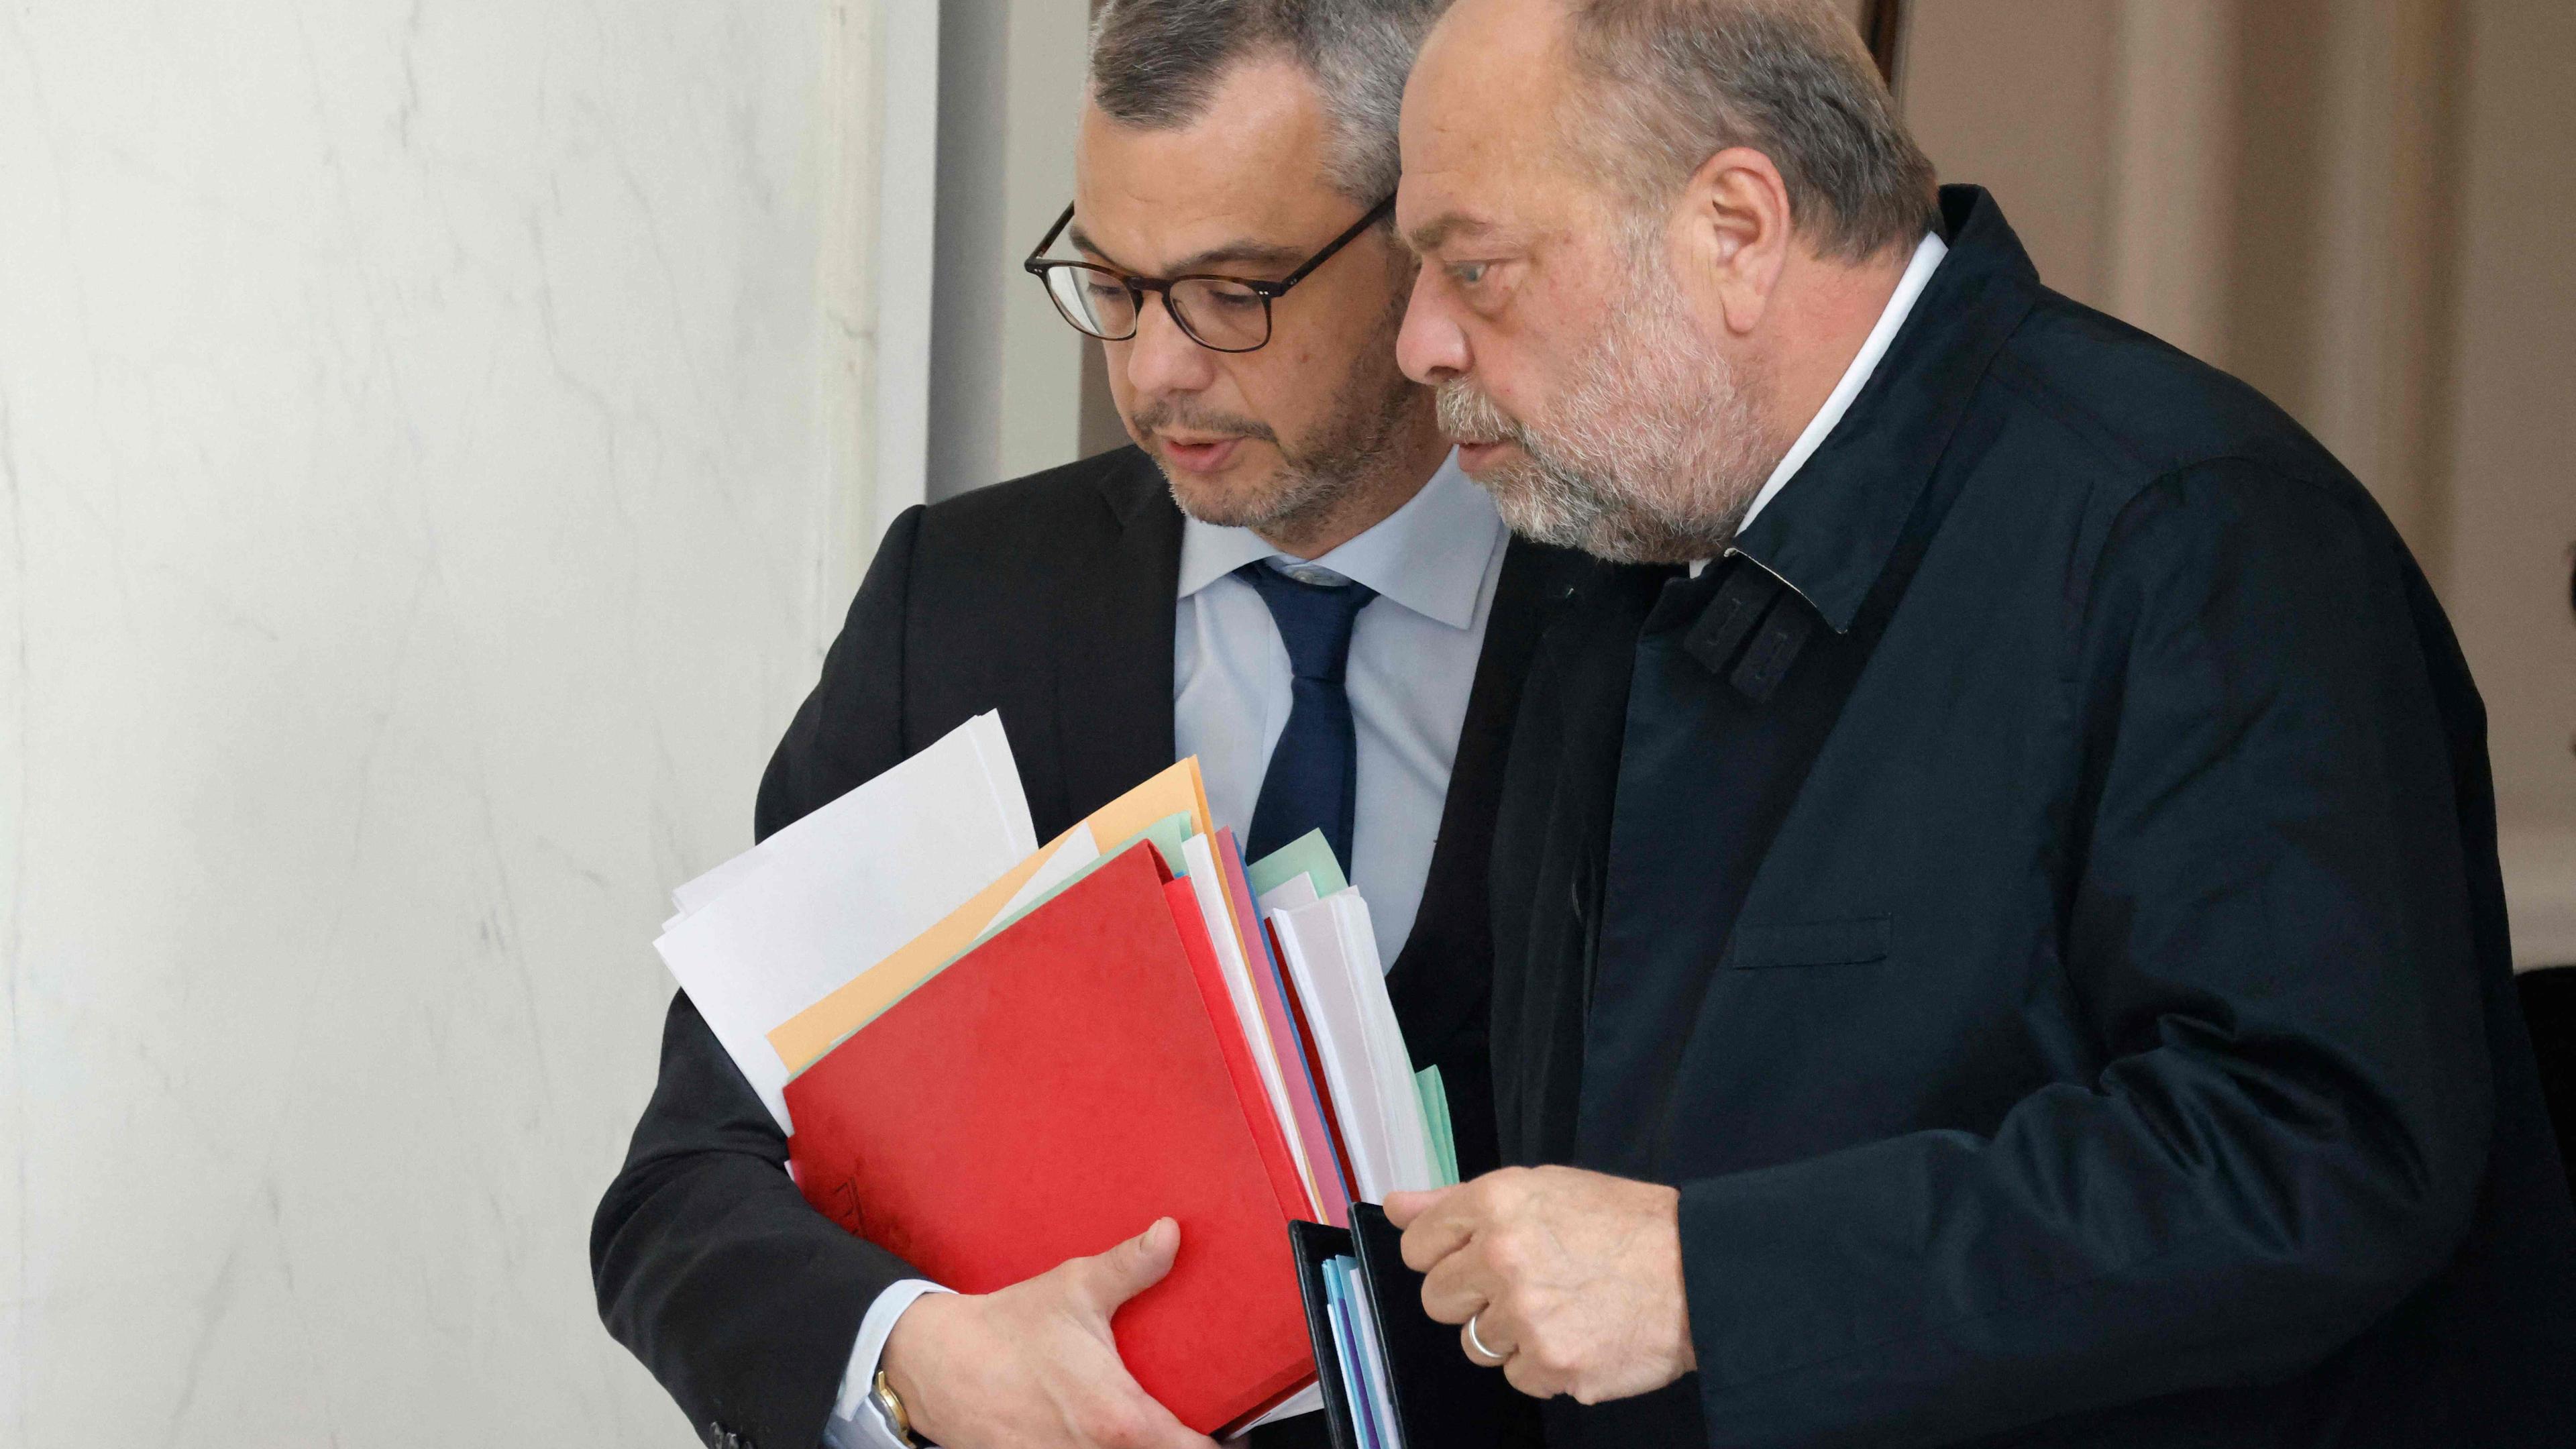 Frankreichs Justizminister Eric Dupond-Moretti (rechts) will deutlich härter gegen die organisierte Kriminalität vorgehen.